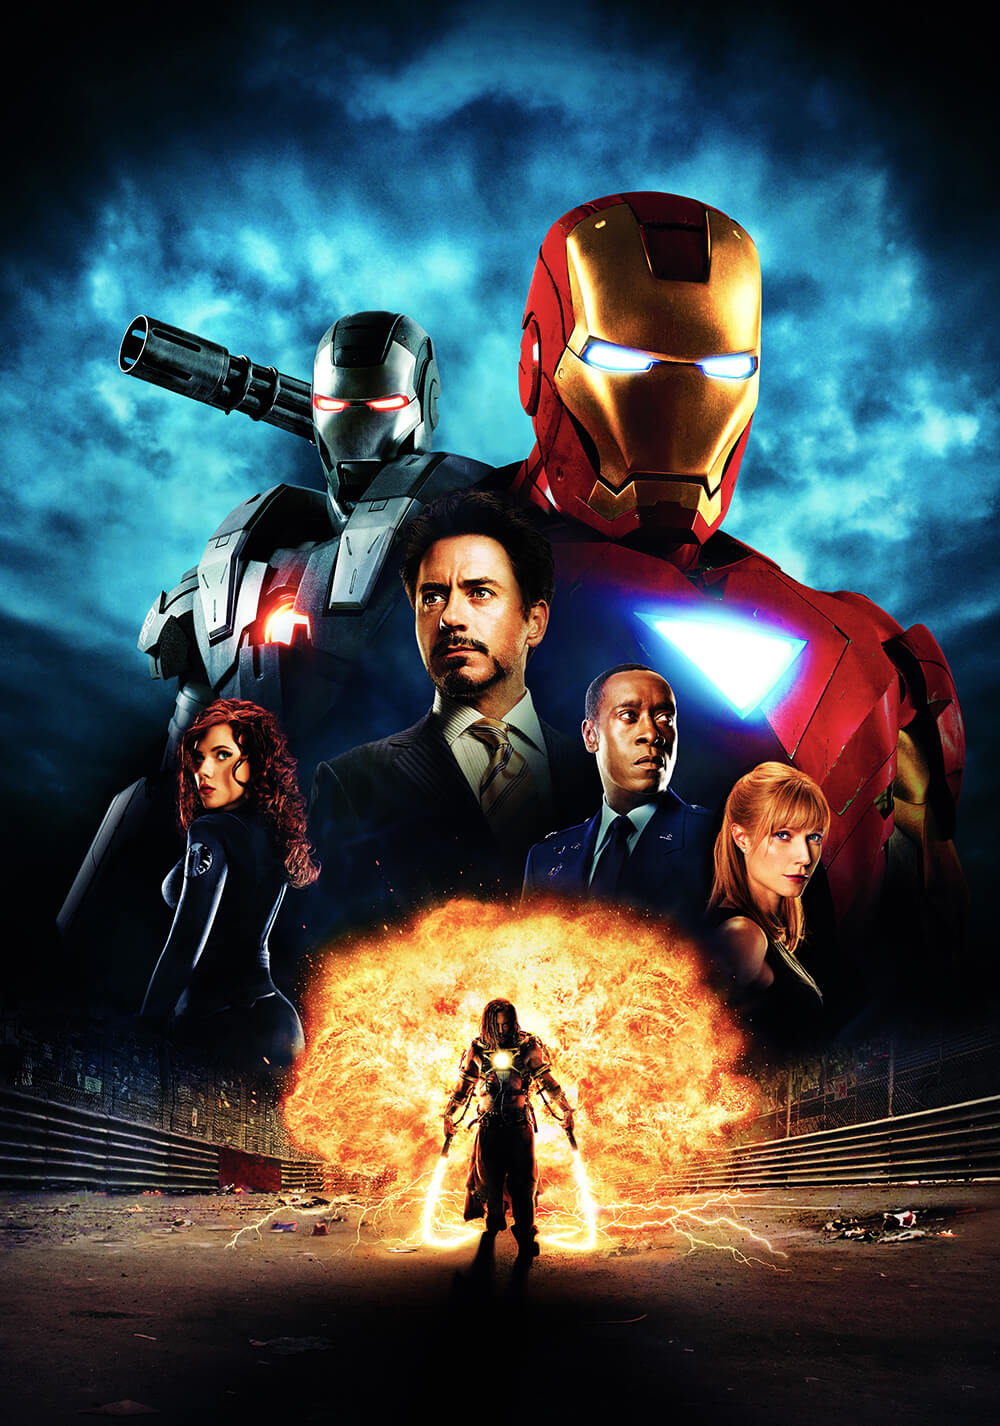 مرد آهنی 2 (Iron Man 2)